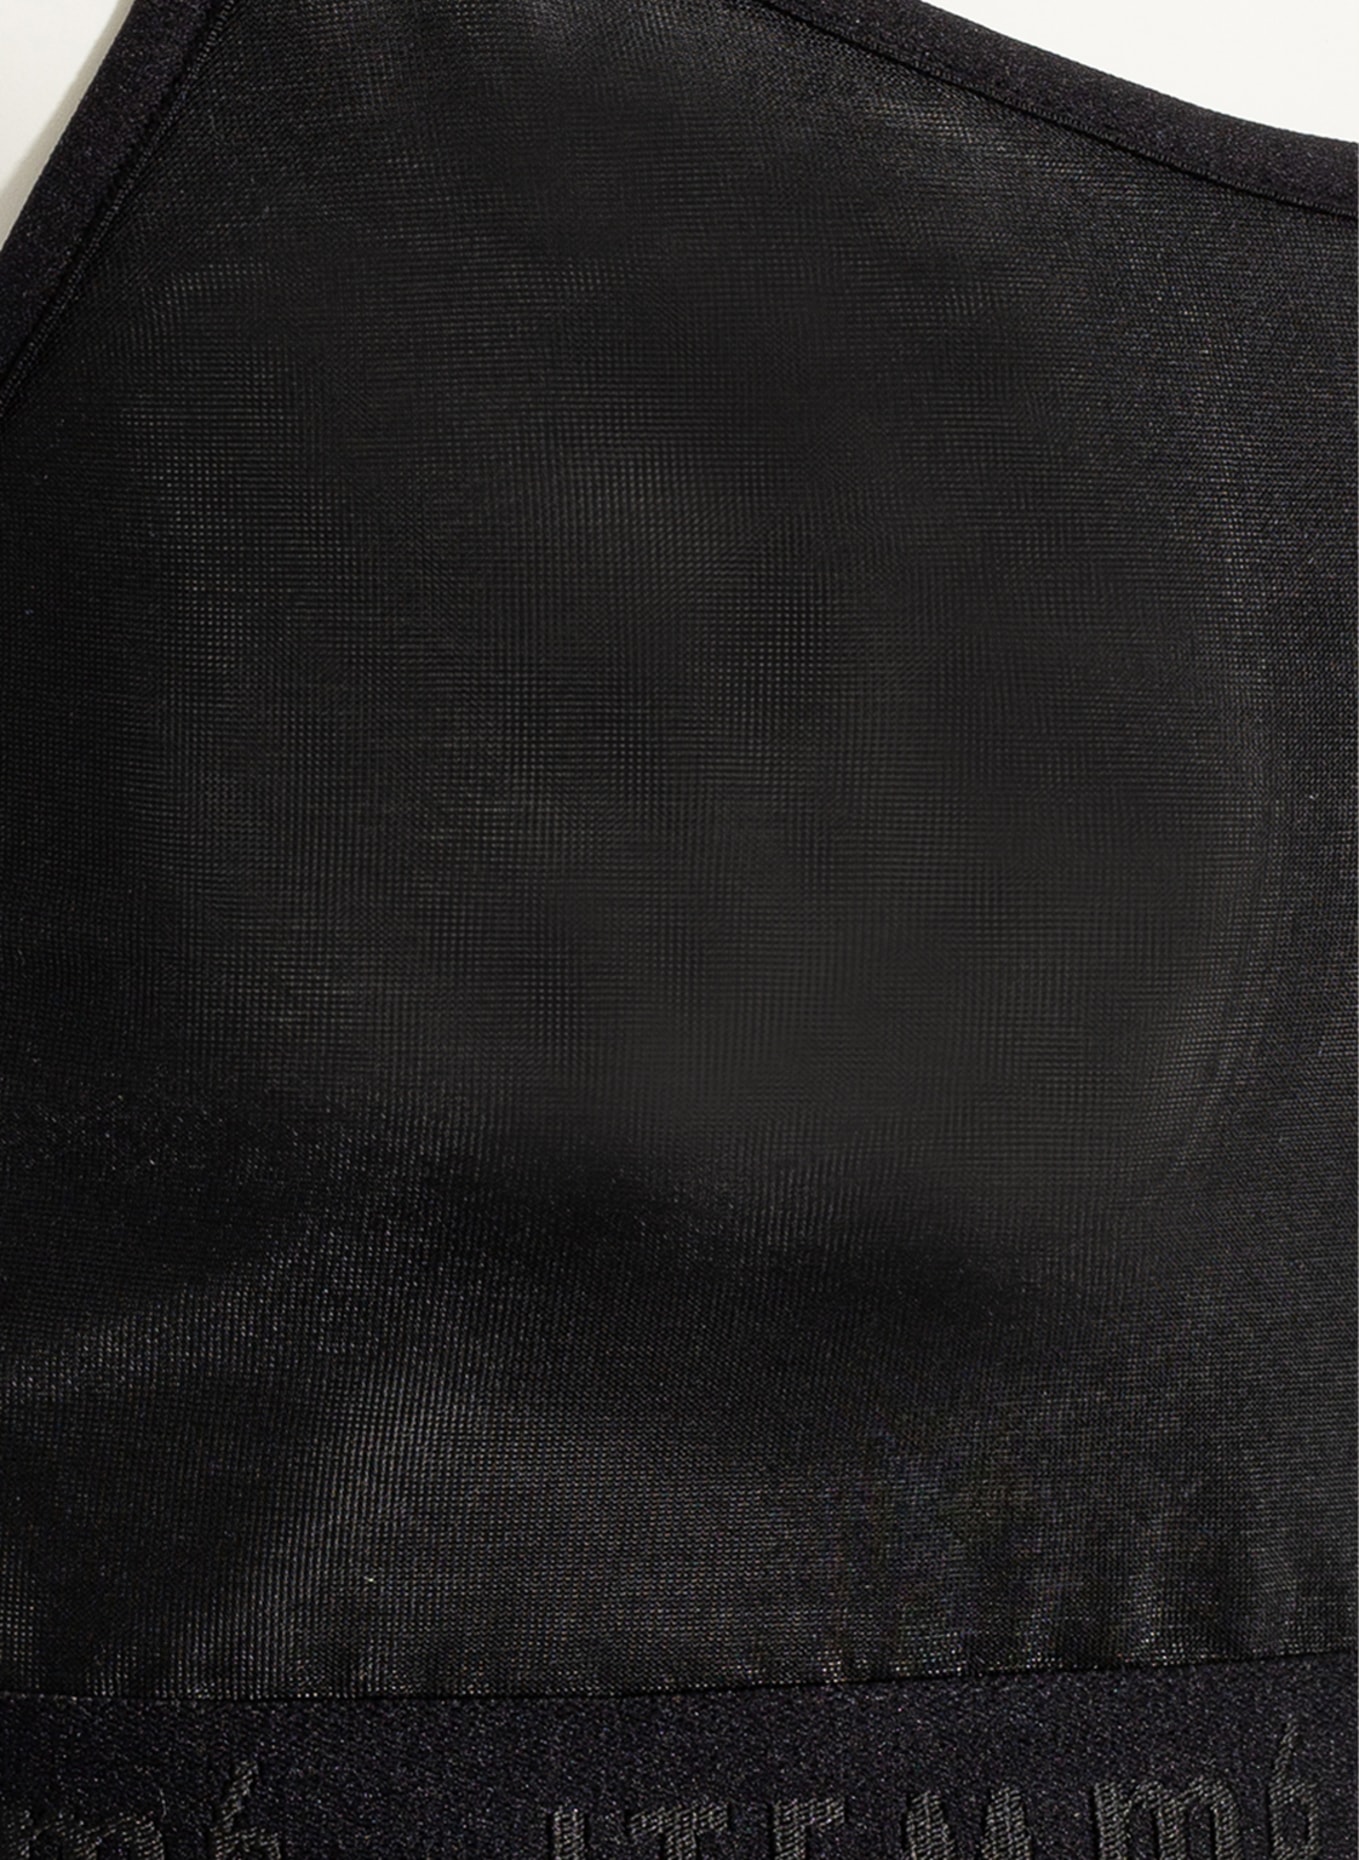 ITEM m6 Bralette ALL MESH, Color: BLACK (Image 4)